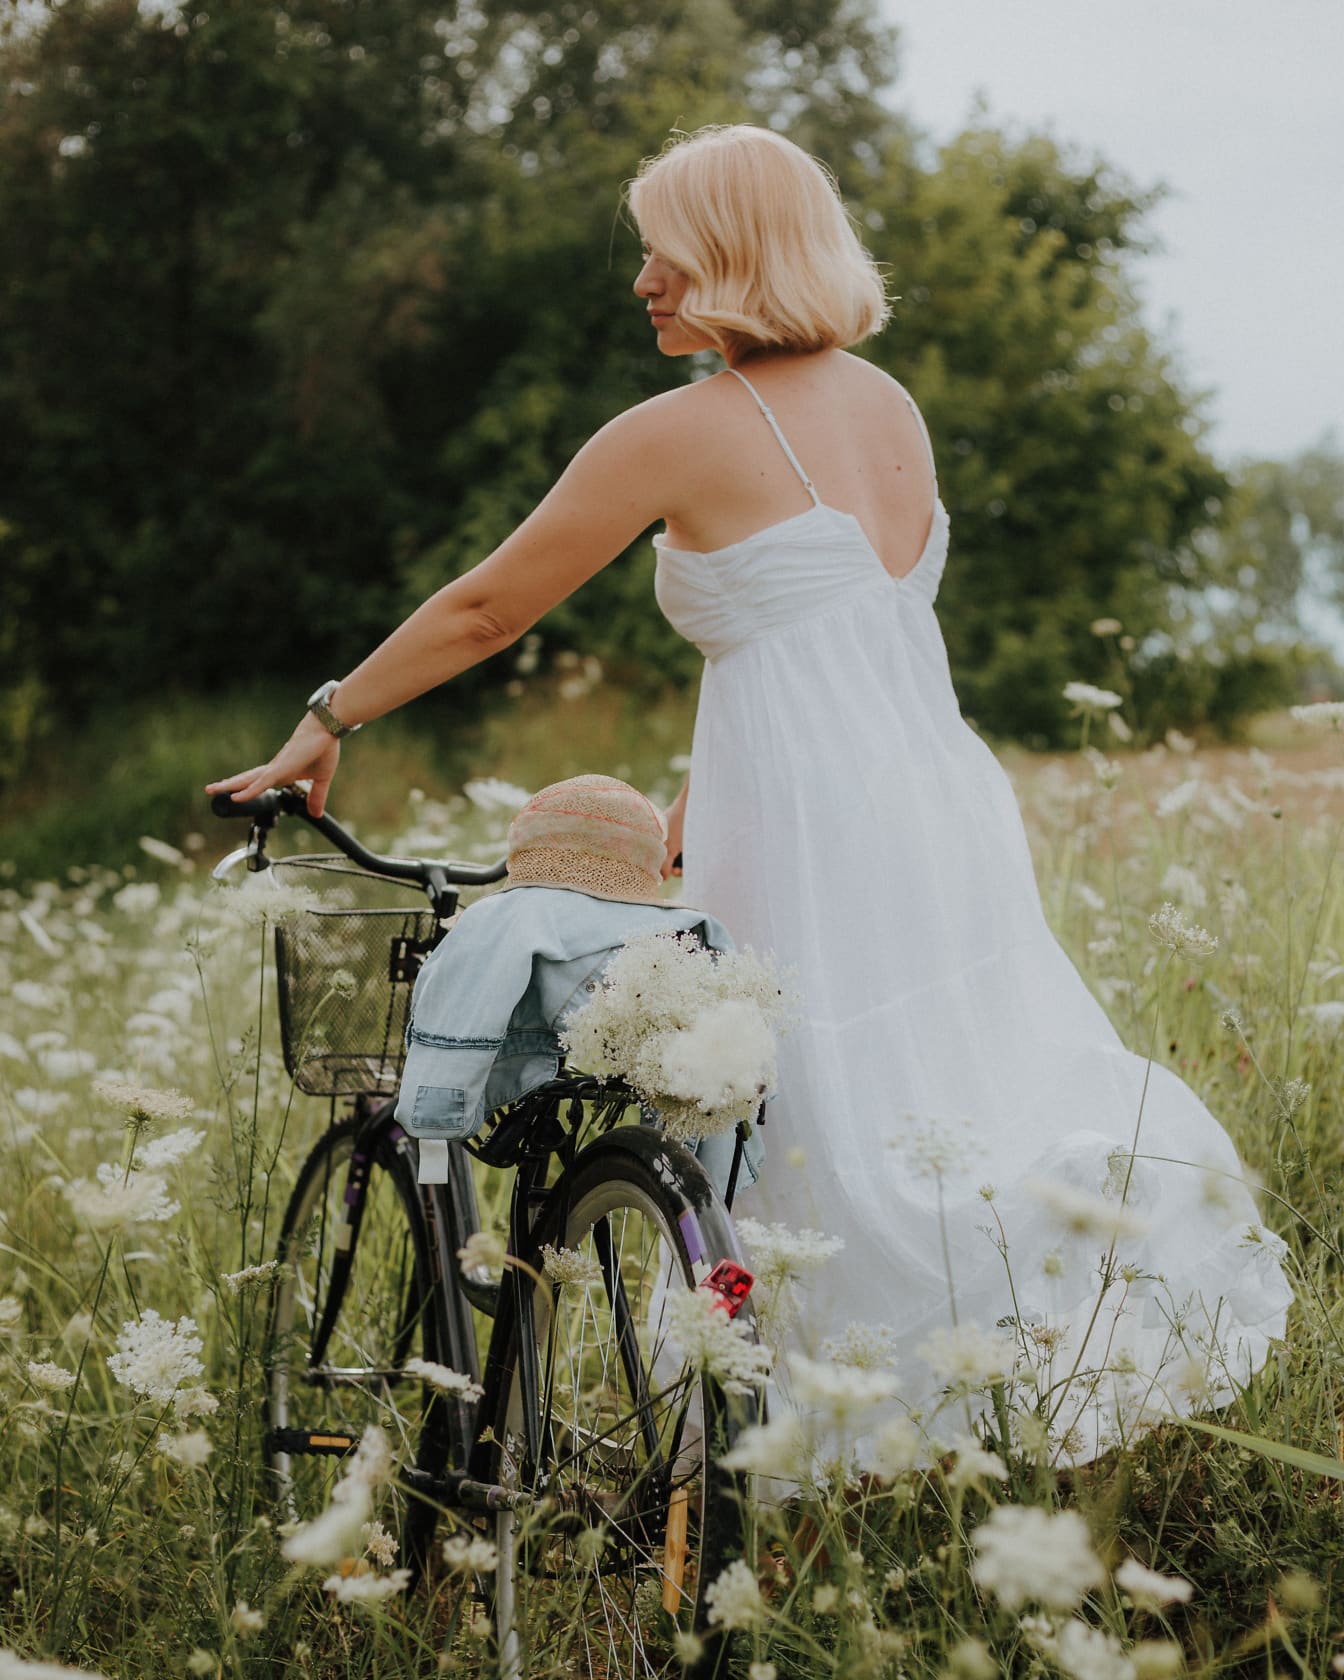 Người phụ nữ nông thôn tóc vàng đẹp trai trong một chiếc váy trắng với một chiếc xe đạp trên cánh đồng hoa